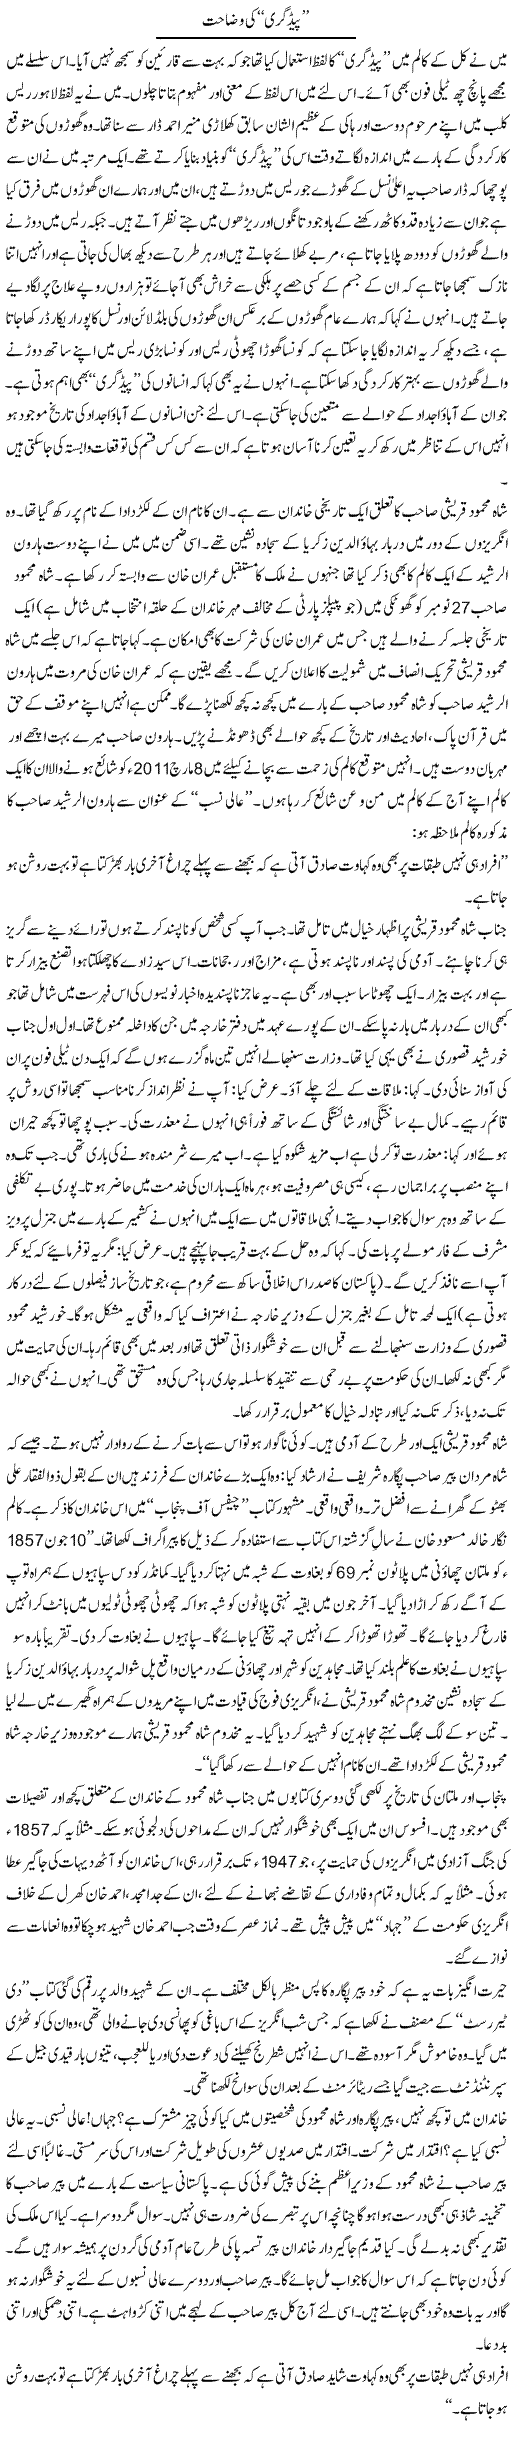 Shah Mehmood Qureshi Express Column Abbas Athar 17 November 2011